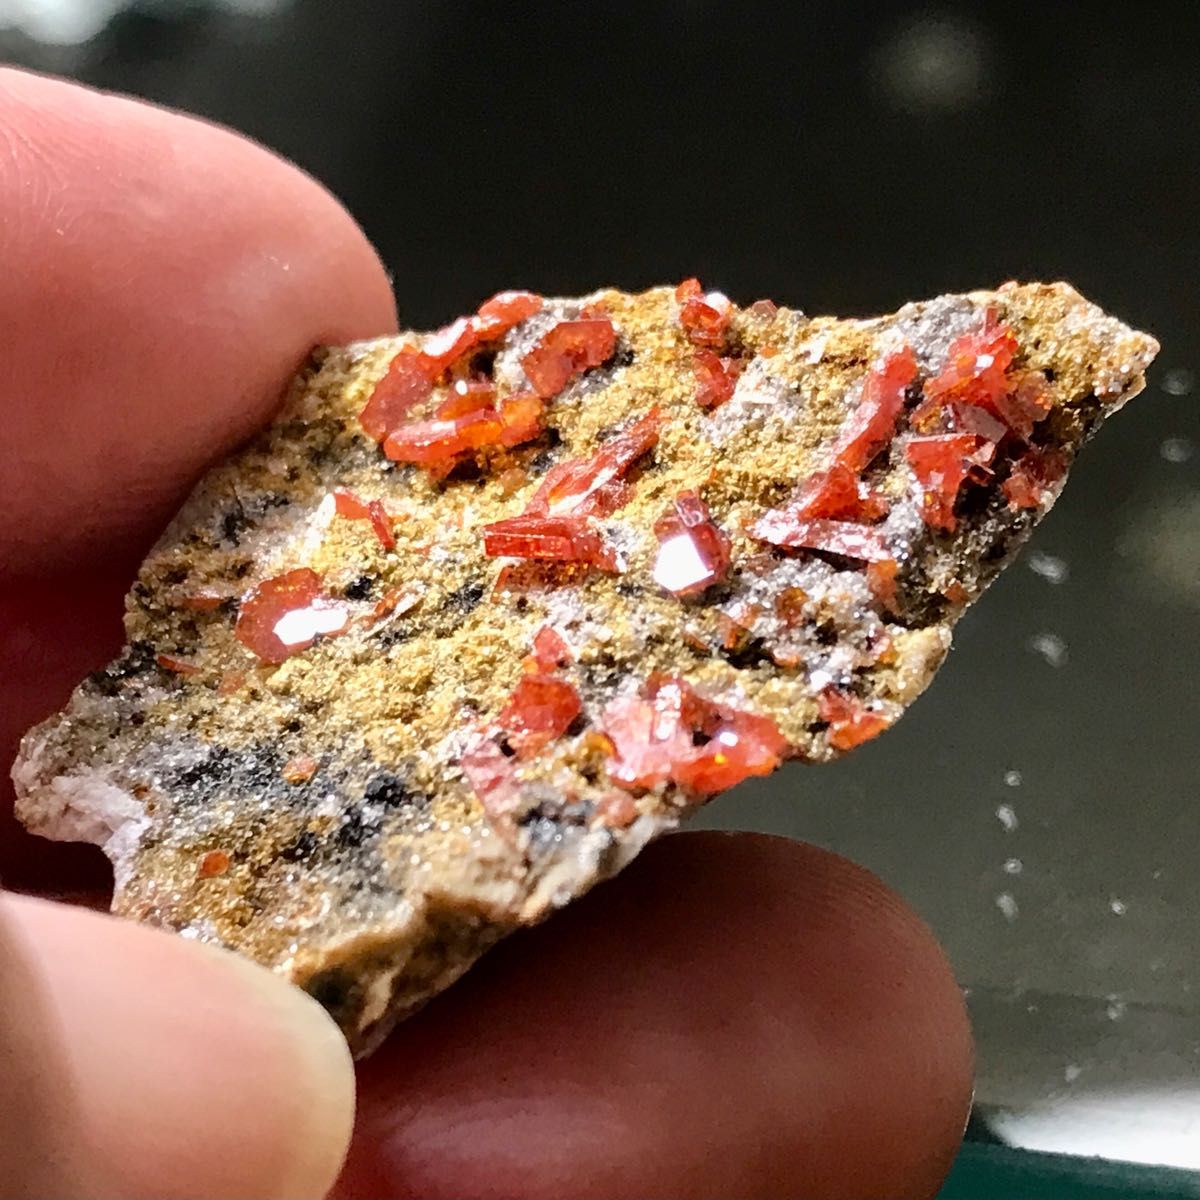 レア 宝石質 バナディナイト モロッコ産 レディッシュオレンジ 43.75ct 一点もの 天然石コレクション 原石 鉱物 標本